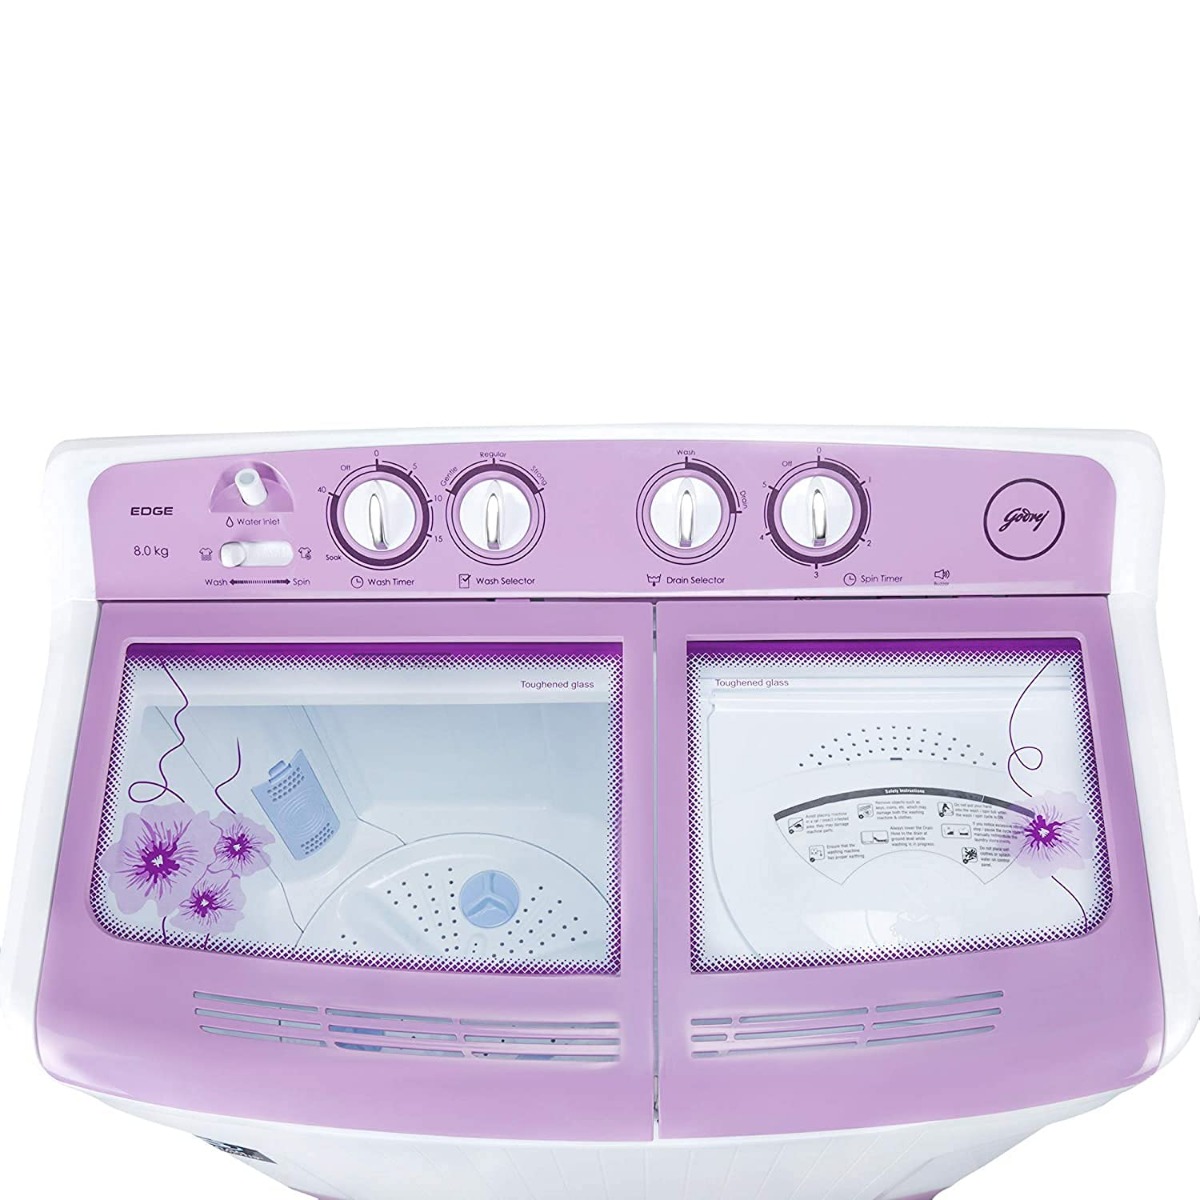 Godrej 8 Kg 5 star Semi-Automatic Top Loading Washing Machine (WS EDGE 80 5.0 TB3 M ,Lavender)-10448